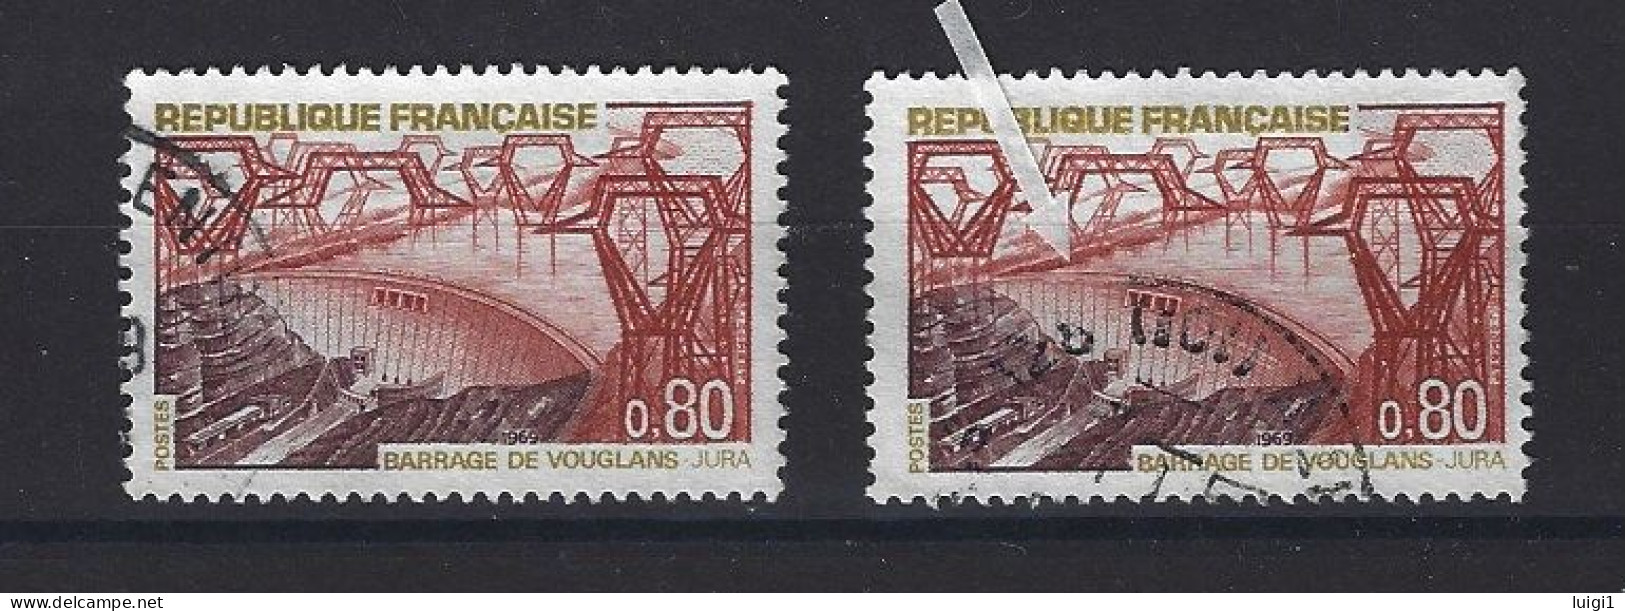 FRANCE 1969 - Y&T N°1583 + N°1583b . 80 C. Barrage De Vouglans. - Variété : Normal + Barrage Rompu. Oblitérés. TB - Usados